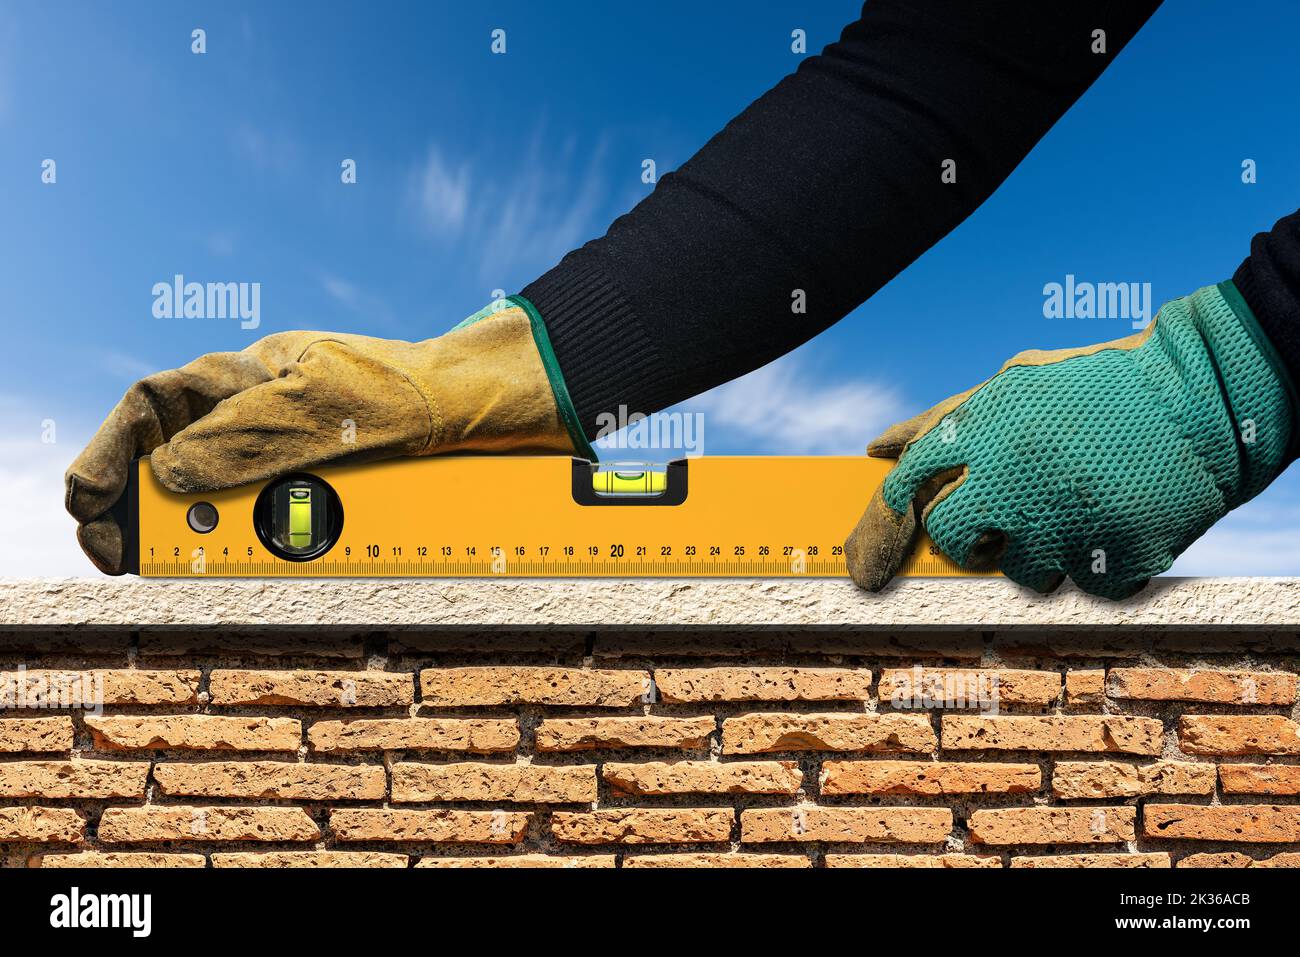 Operatore manuale con guanti di lavoro protettivi, che tiene una livella a bolla d'aria arancione, sopra una parete in mattoni e marmo con cielo blu sullo sfondo. Foto Stock